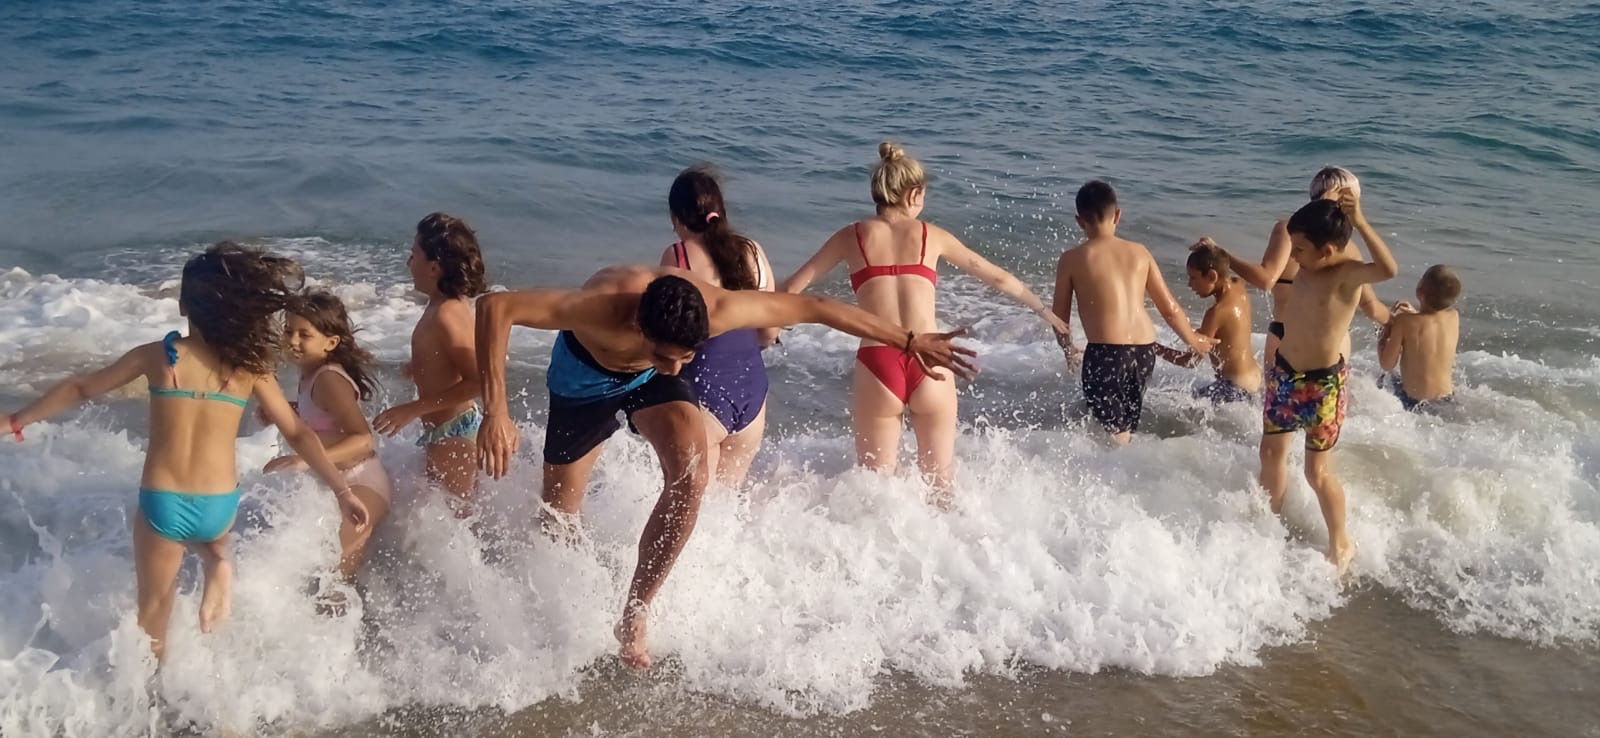 Grupo de participantes disfrutando del baño en la playa.